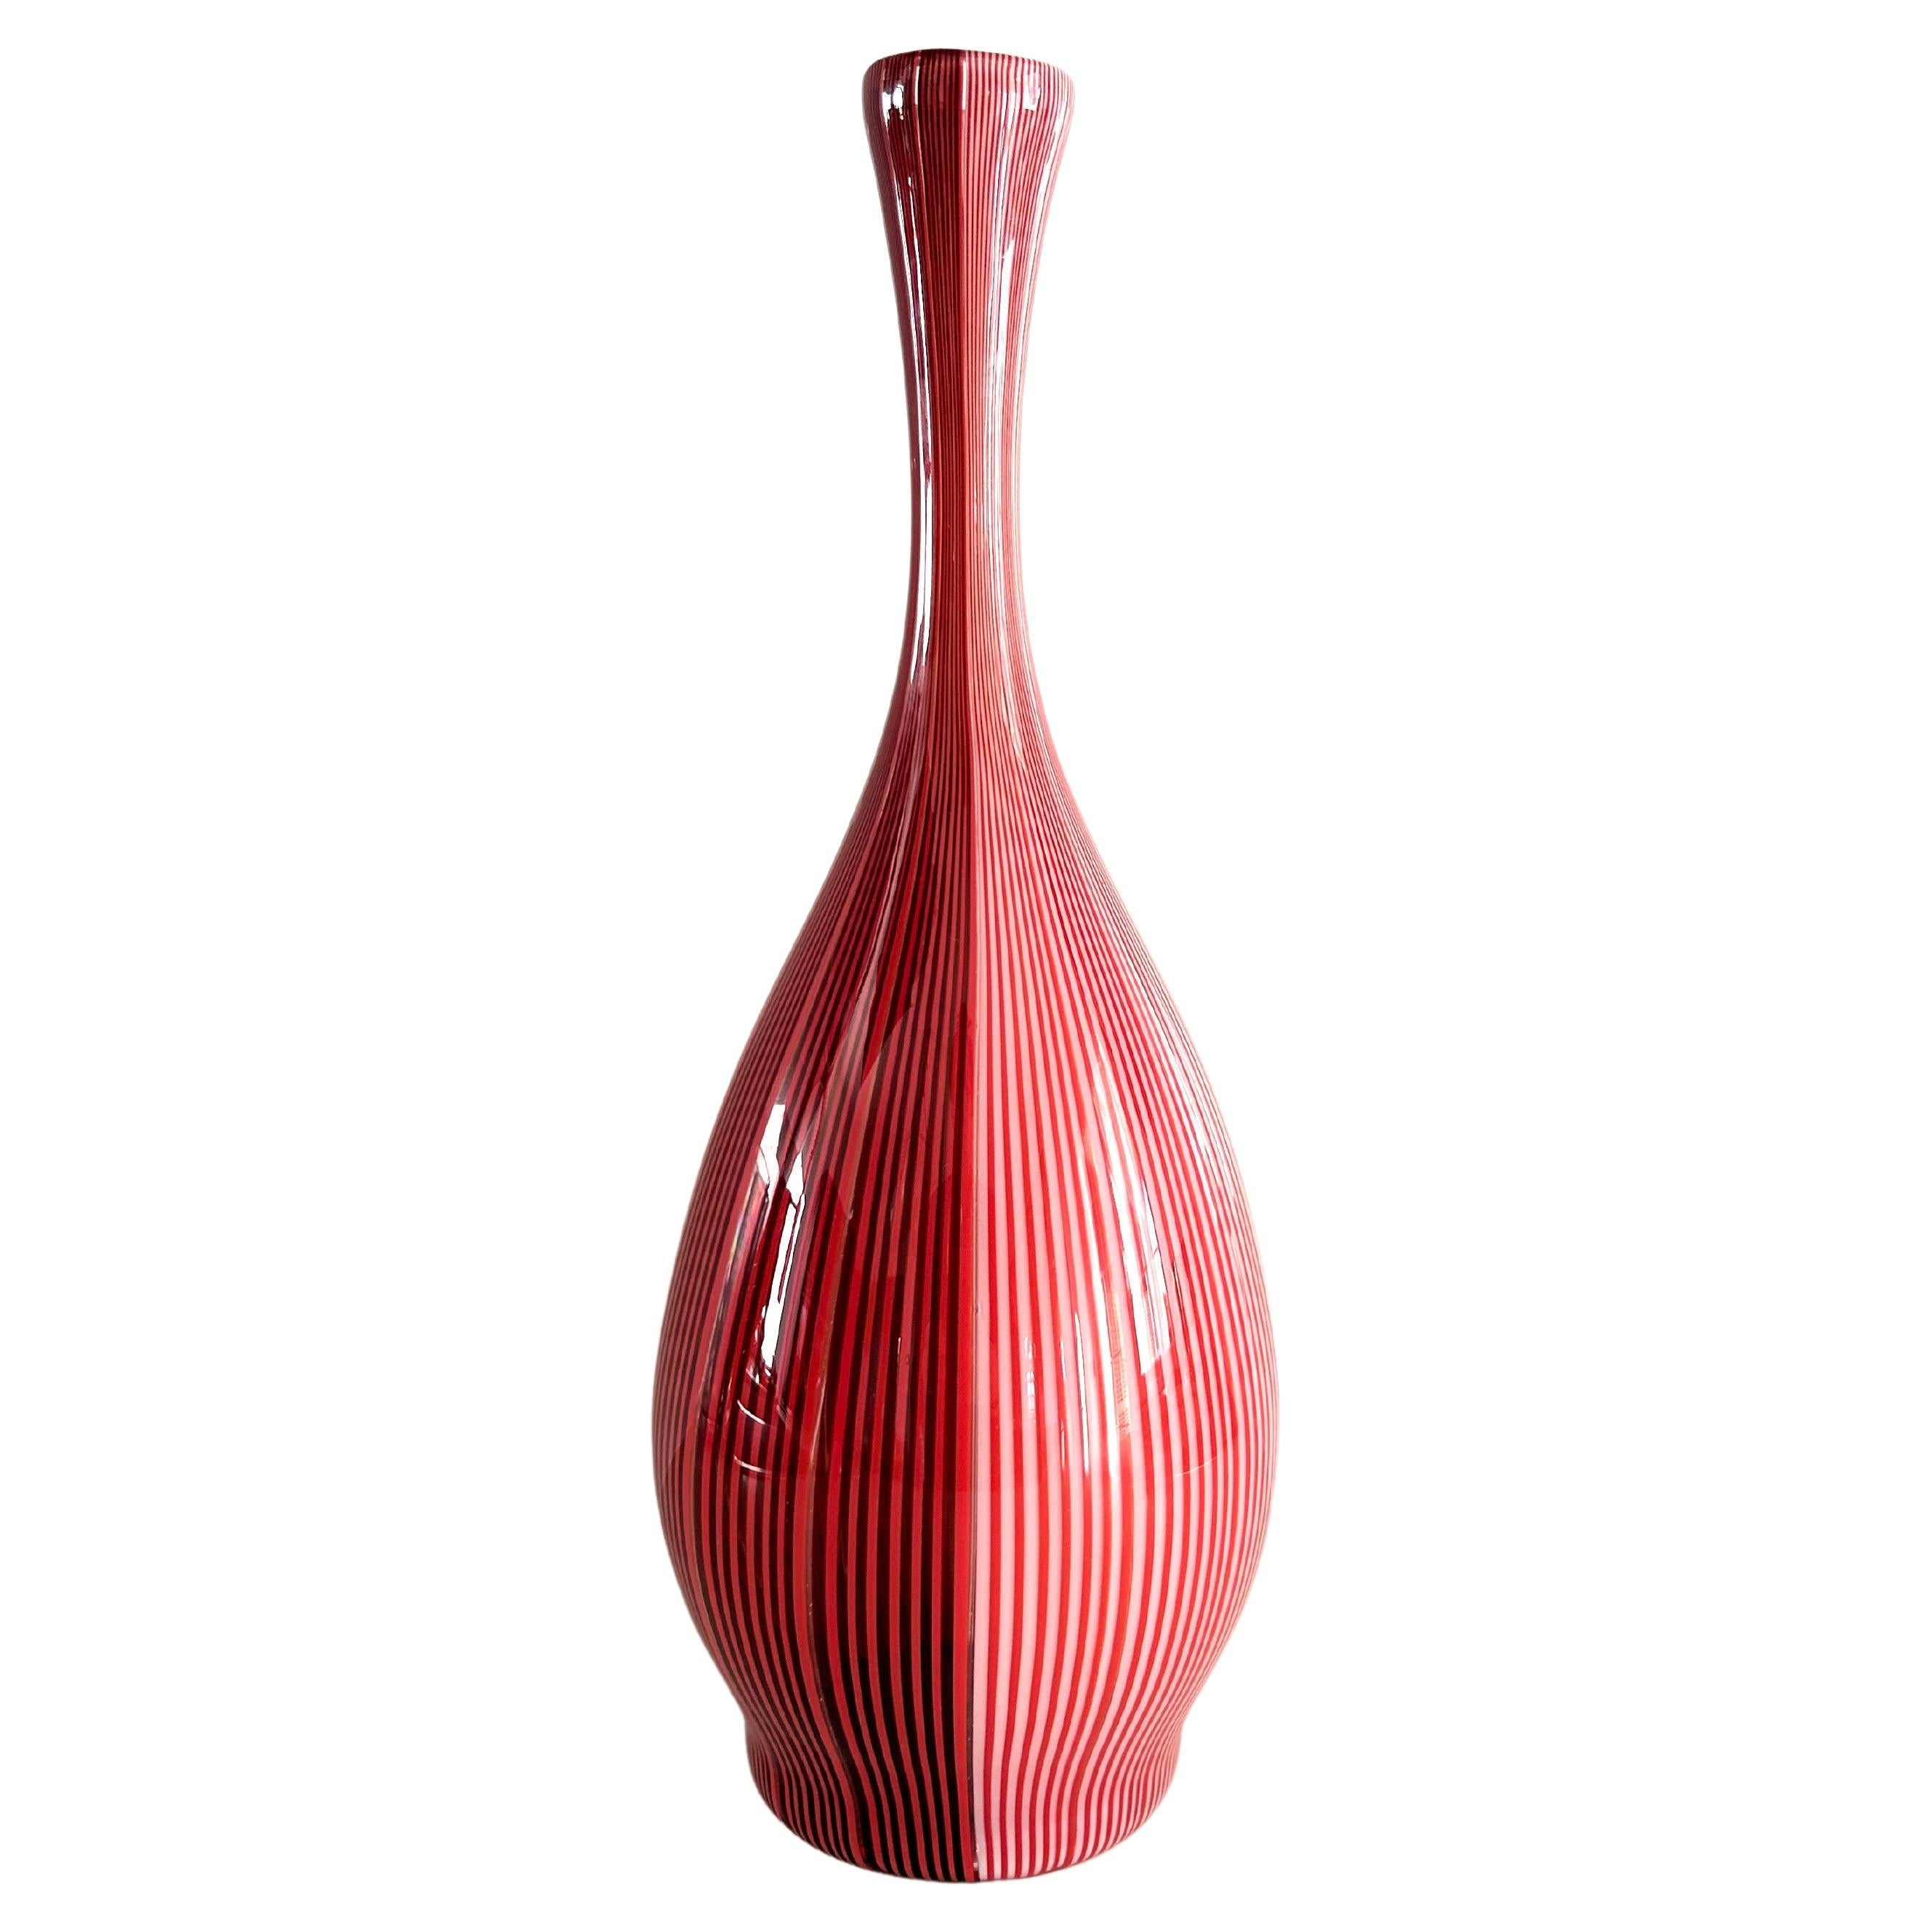 Venini "Shiny Fabric" Vase by Carlo Scarpa